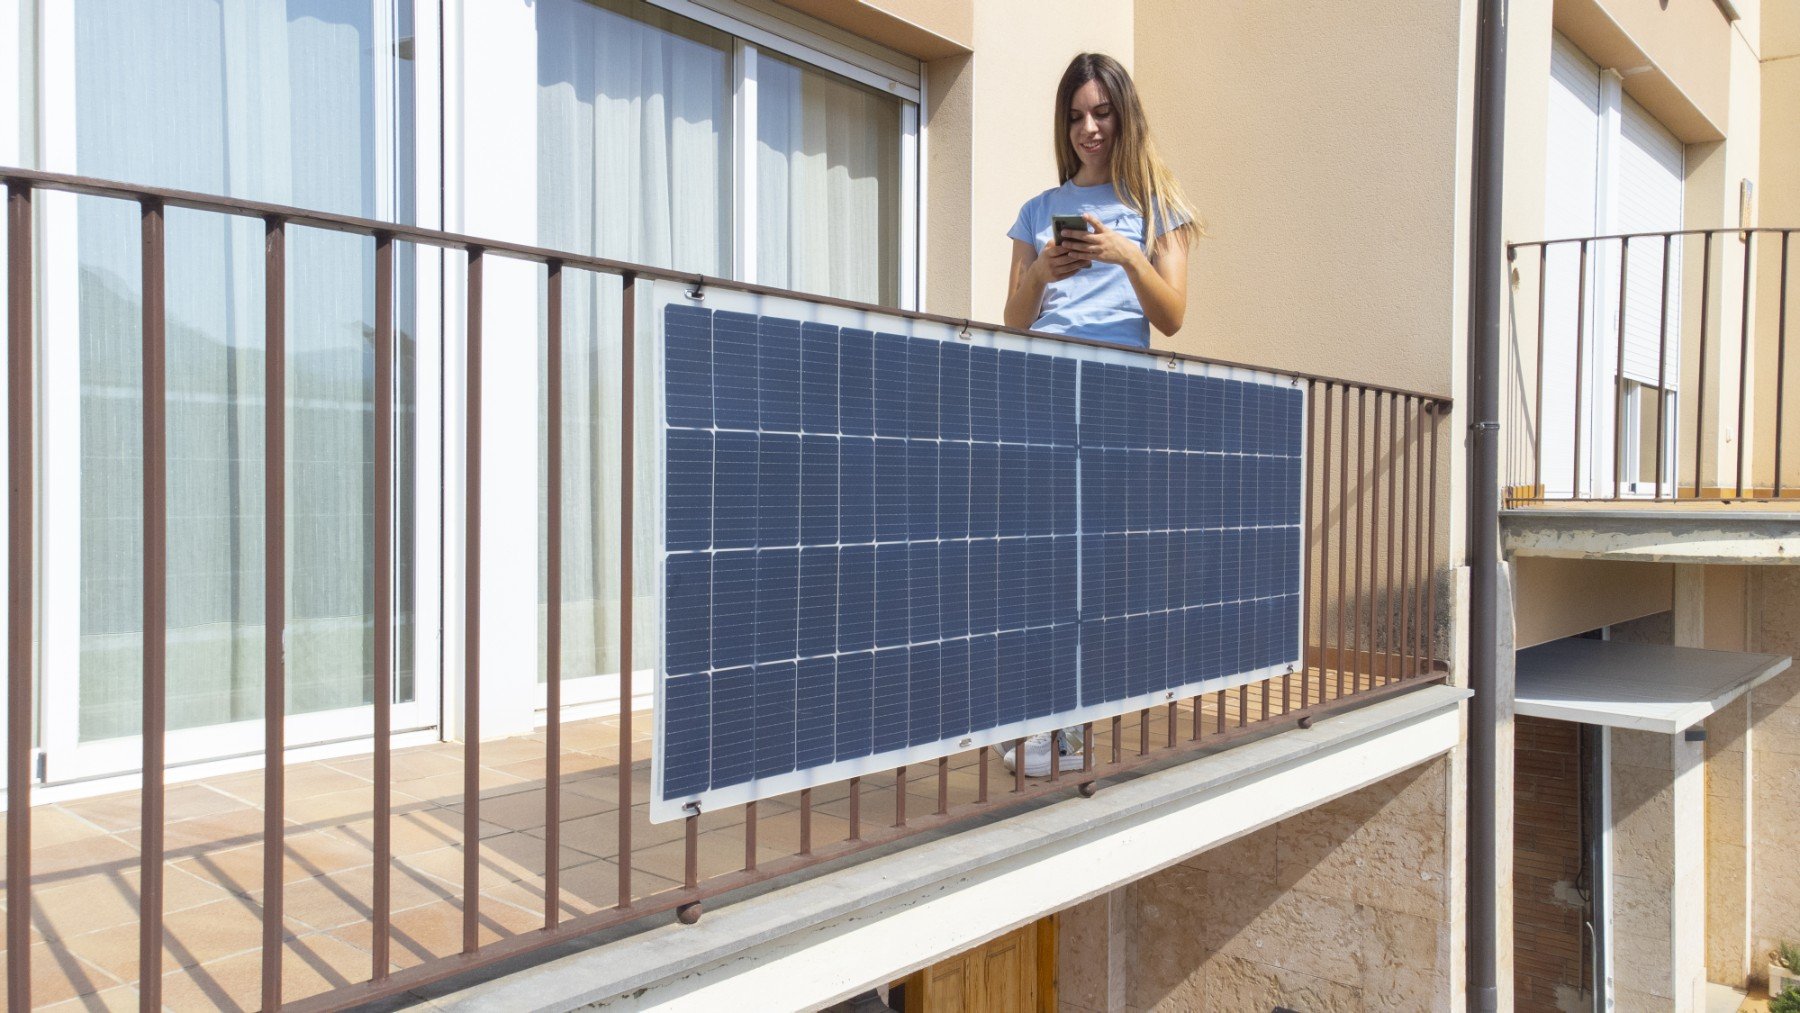 Los paneles solares flexibles autoinstalables pueden ser una solución para reducir tu factura de la luz